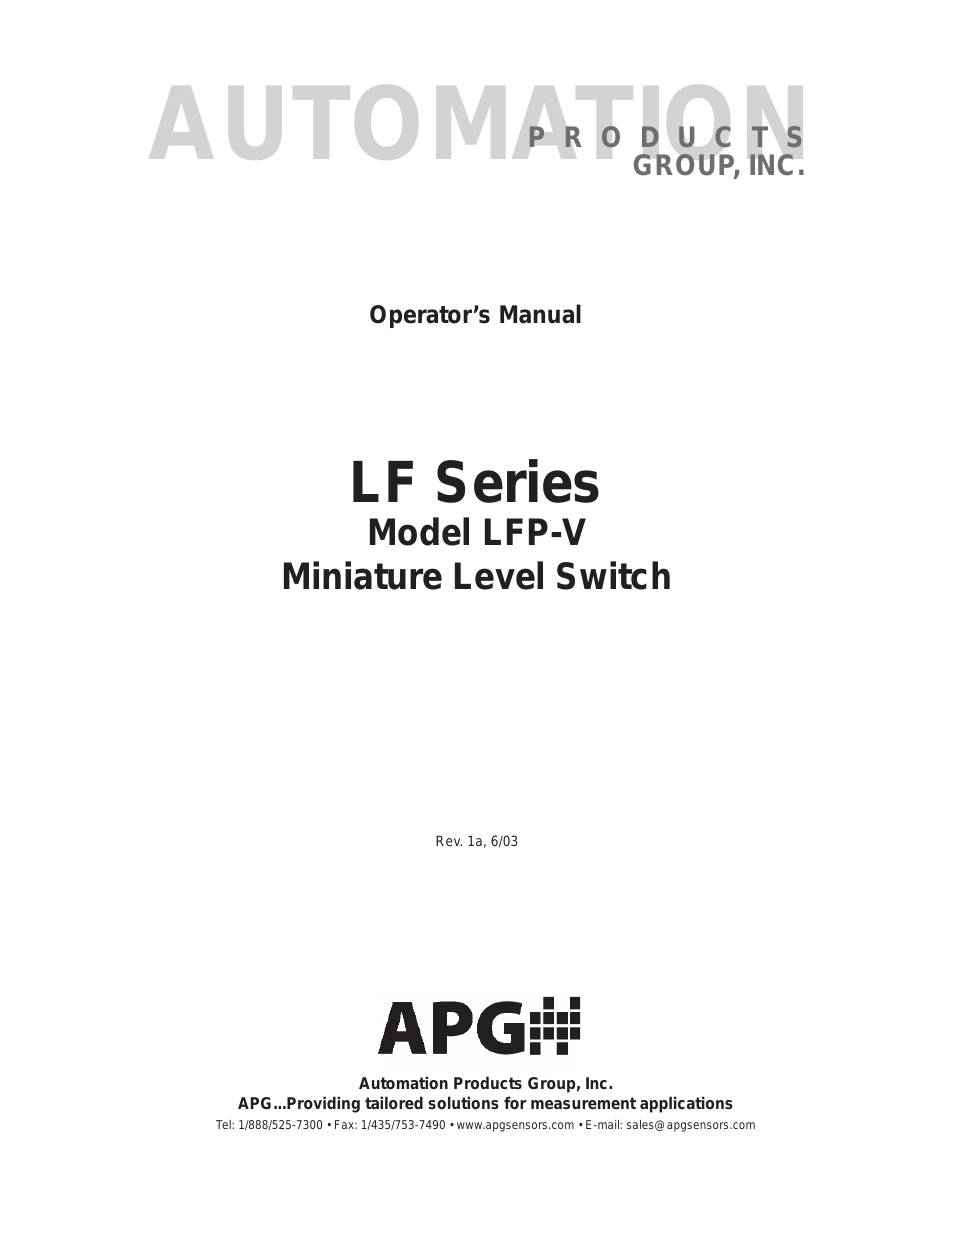 LF Series user manual